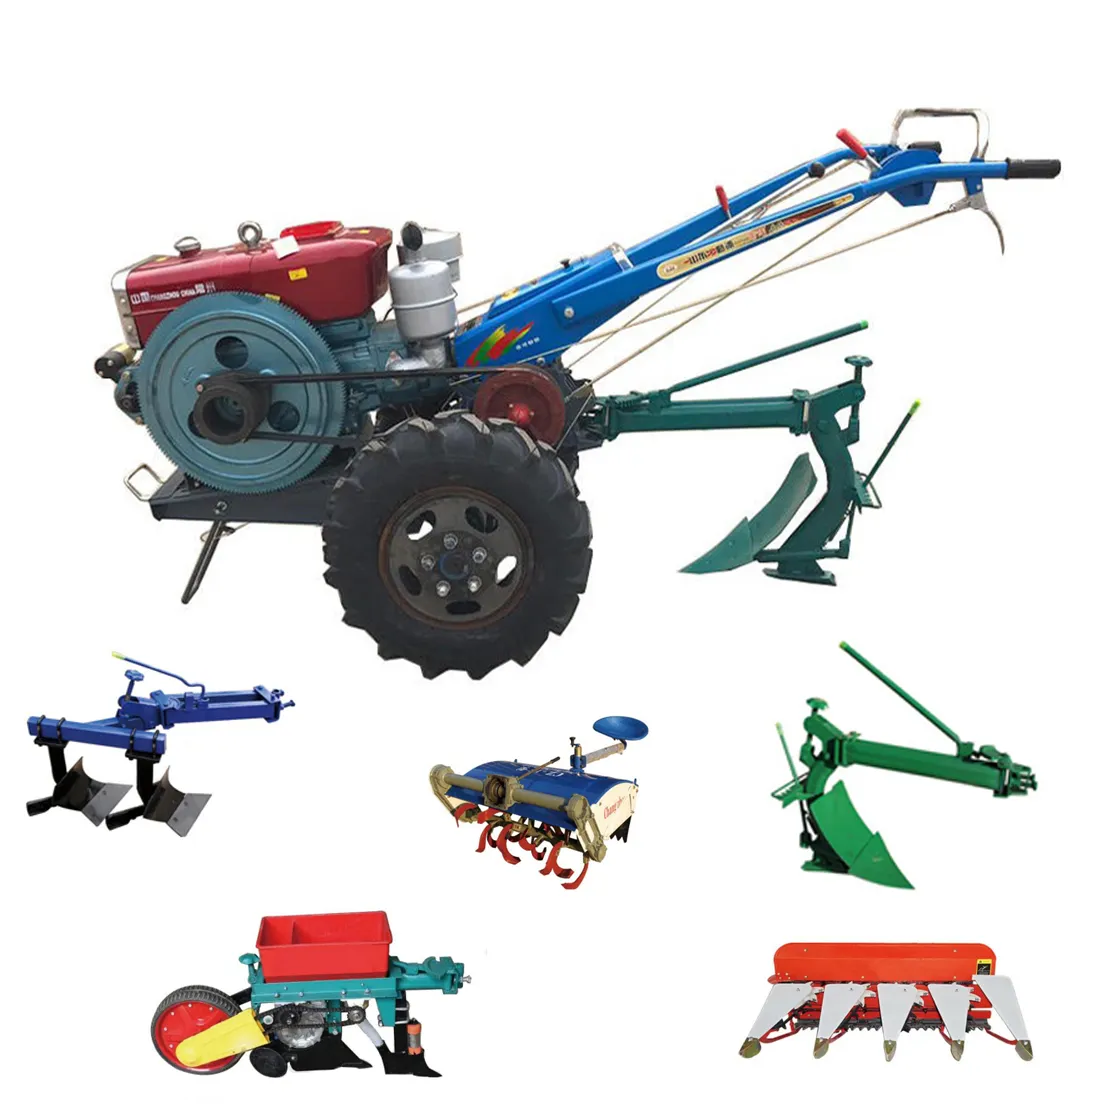 Tractor de Agricultura de 15hp, 20hp, 30hp, 4x4, mini camiones, tractor agrícola con equipo auxiliar